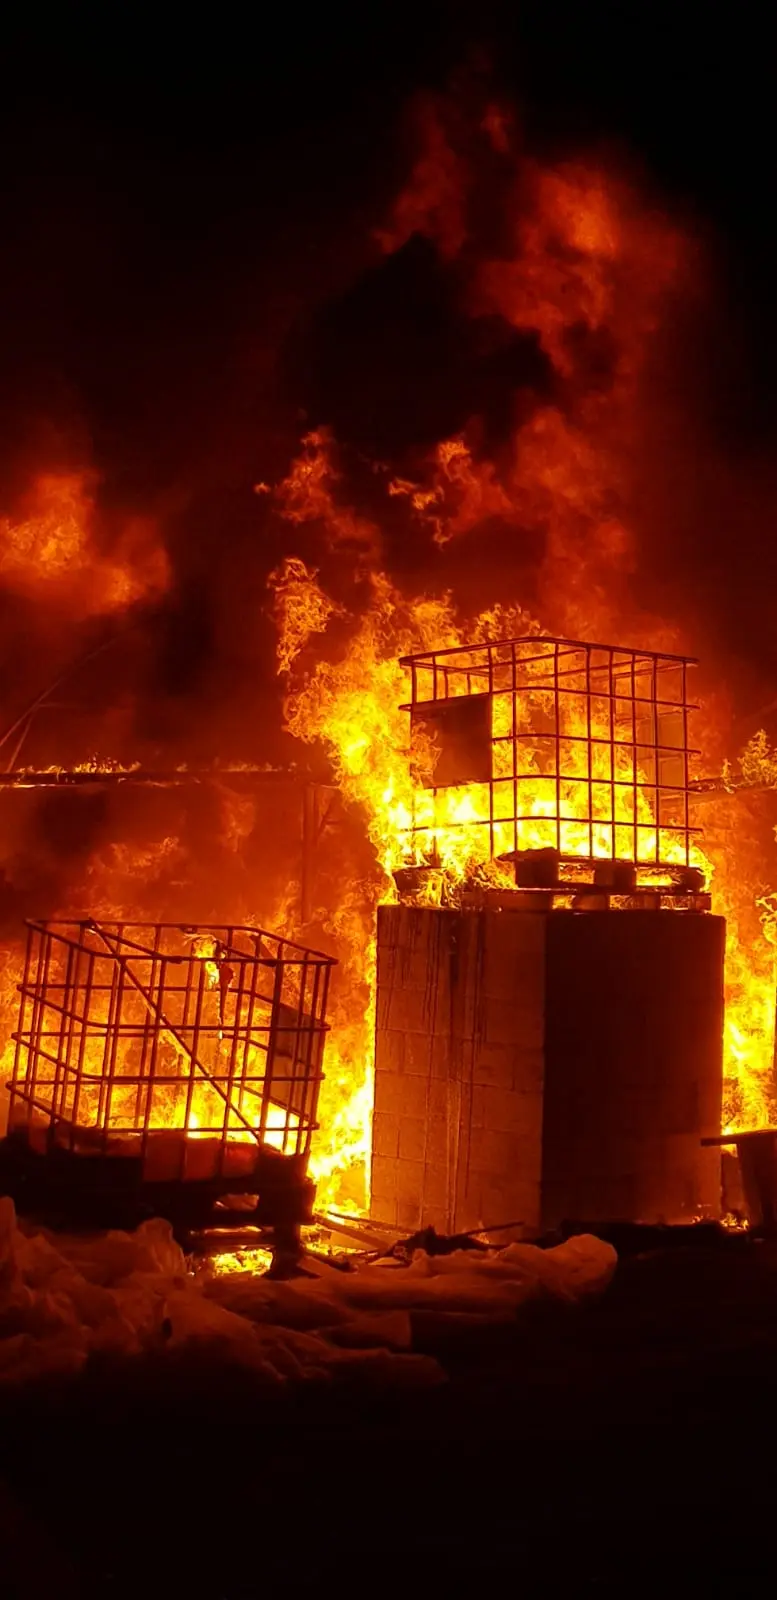 שריפה בחממות בקיבוץ בעוטף עזה כתוצאה מפצצת תאורה של צה"ל לאחר חדירת מחבל שנעצר